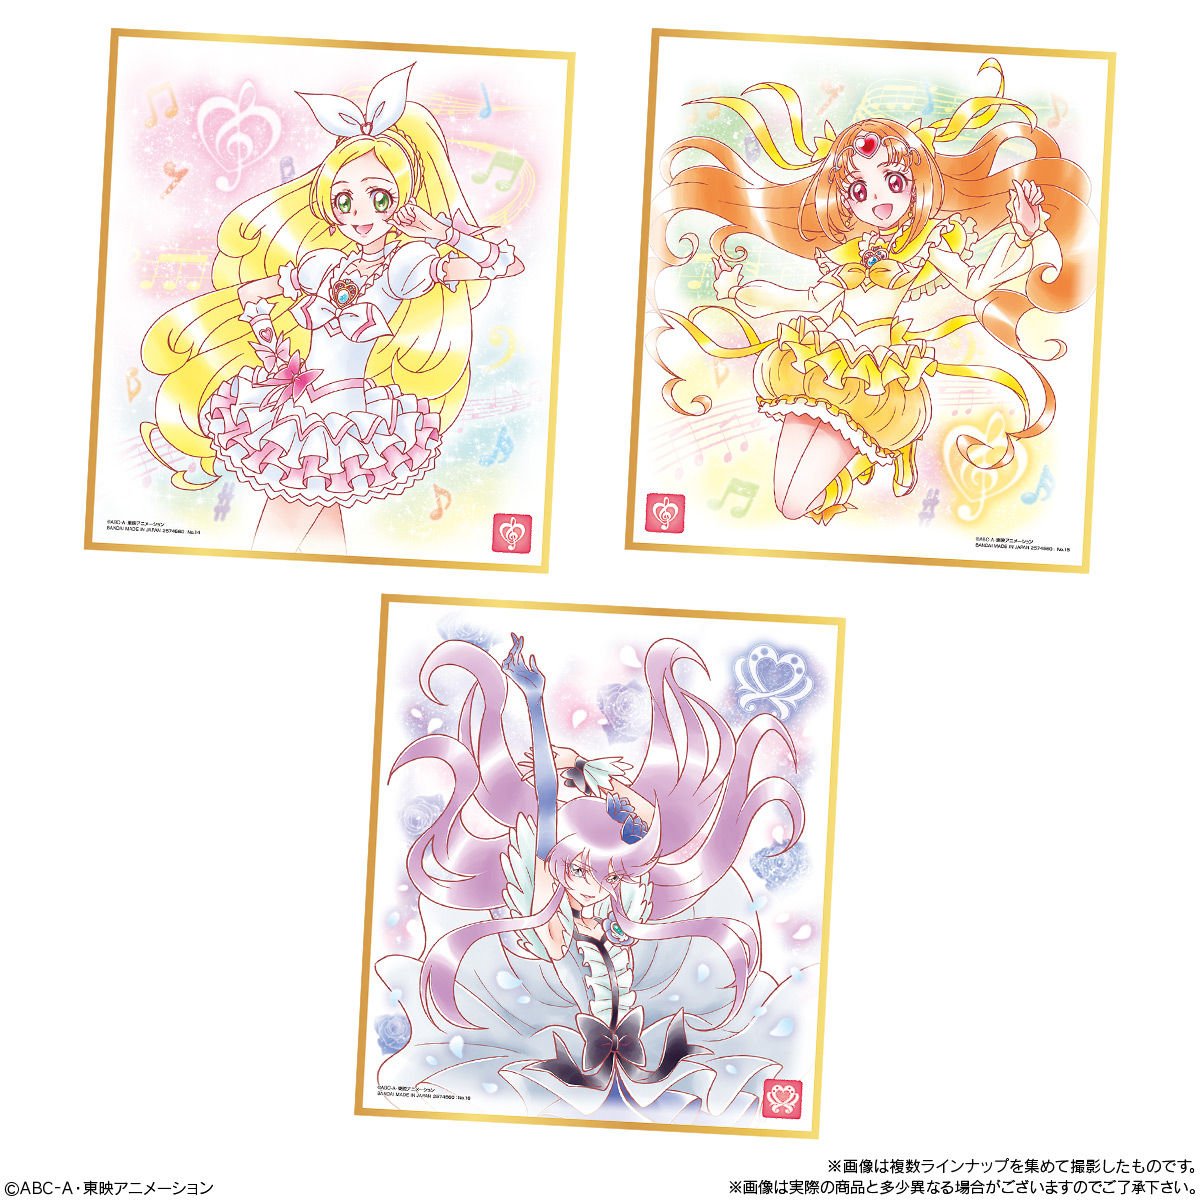 【食玩】プリキュア『プリキュア 色紙ART5』10個入りBOX-006